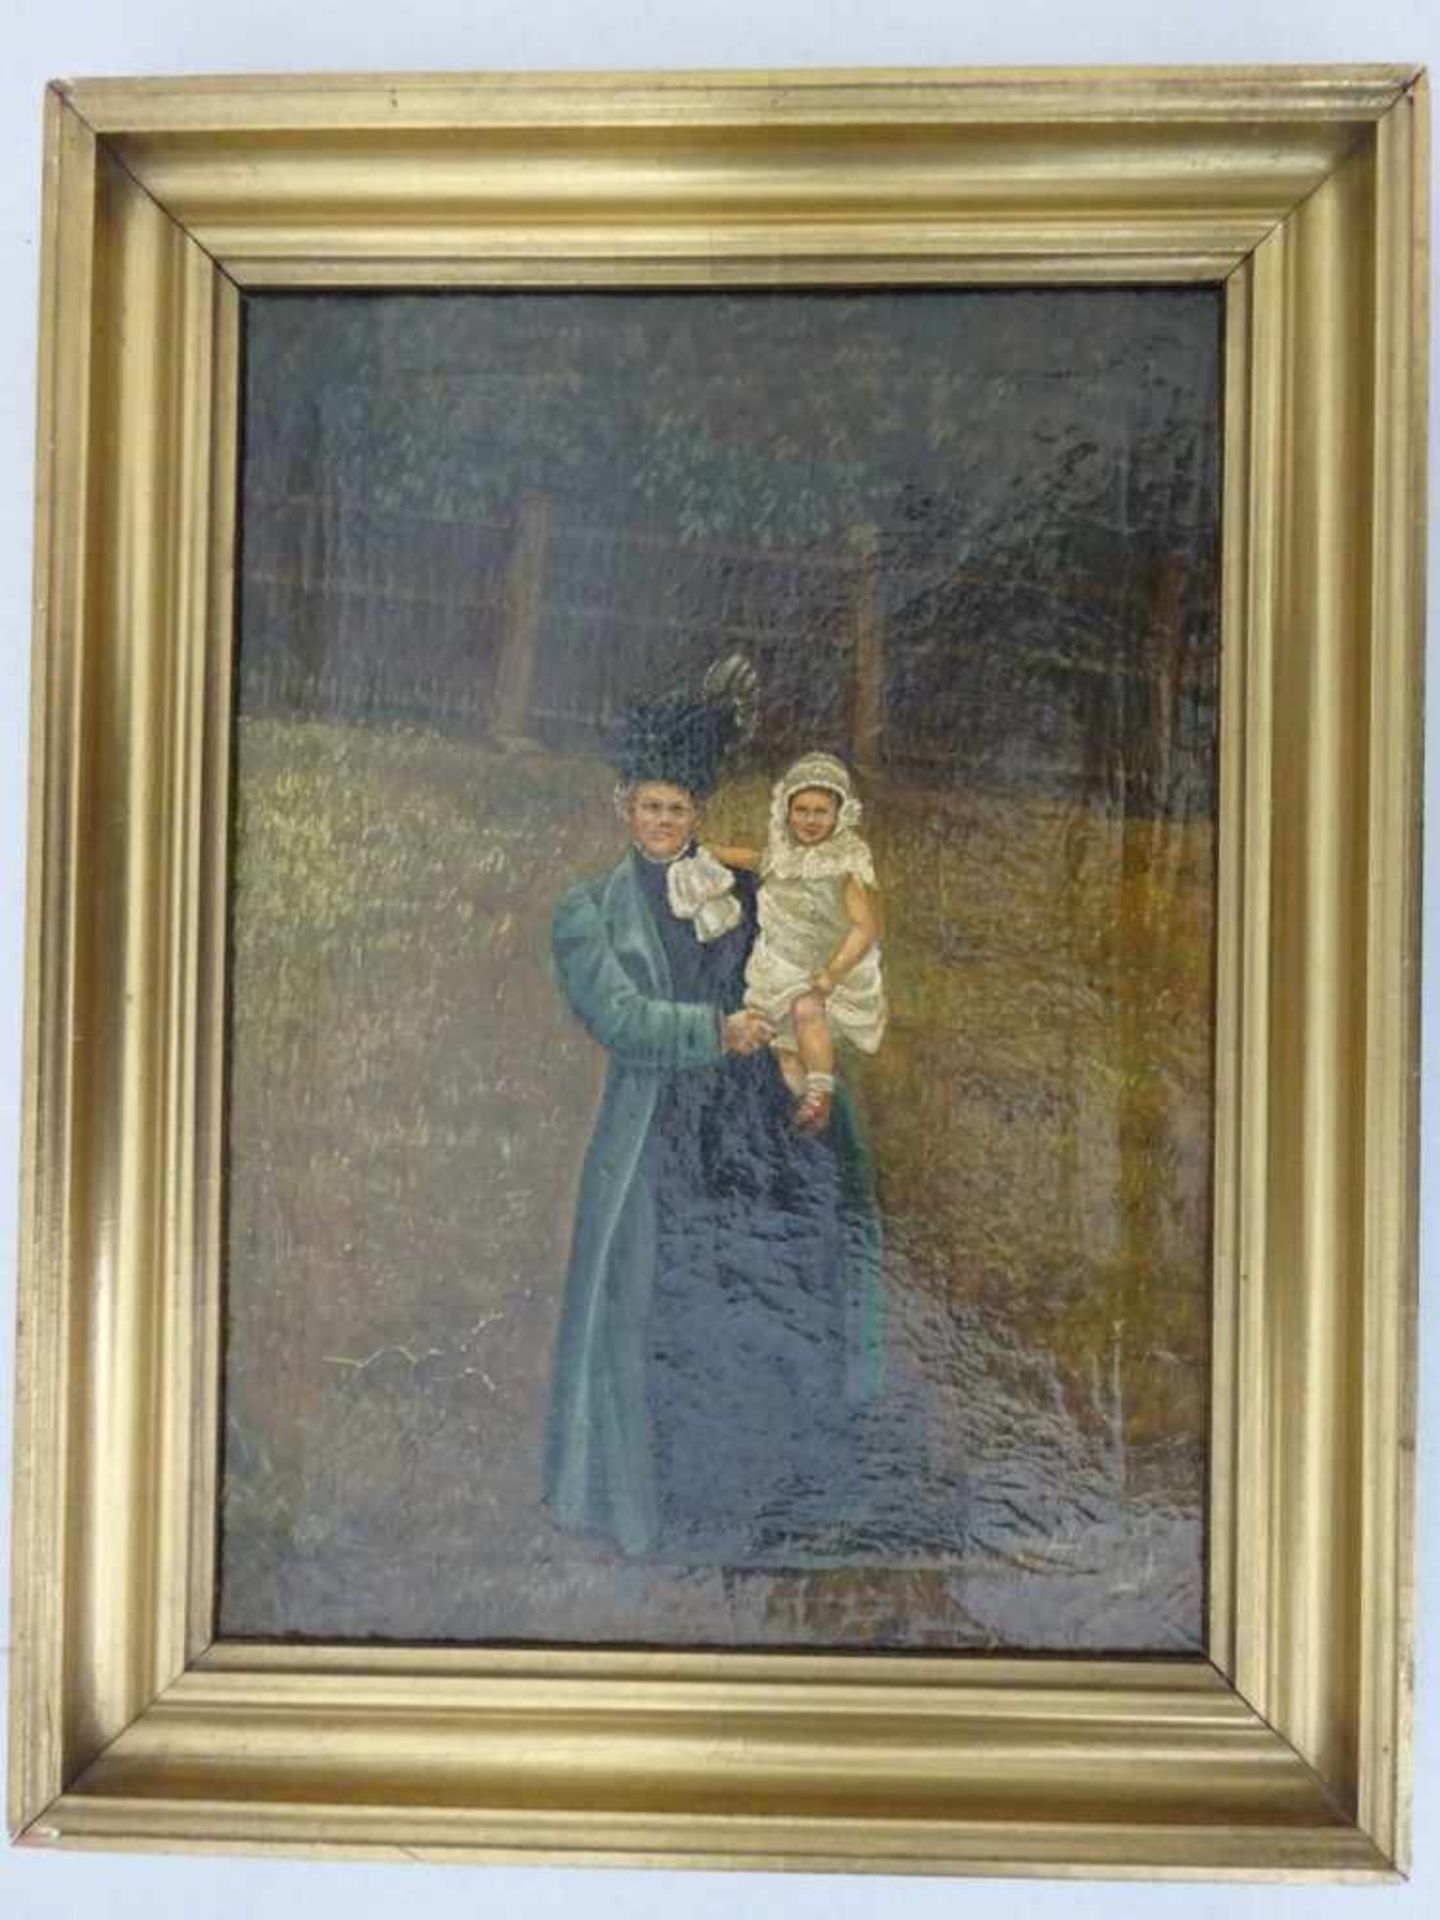 Anonym.-Porträt einer Dame mit Kind. Öl auf Leinwand. Um 1900. Unten rechts schwer leserlich